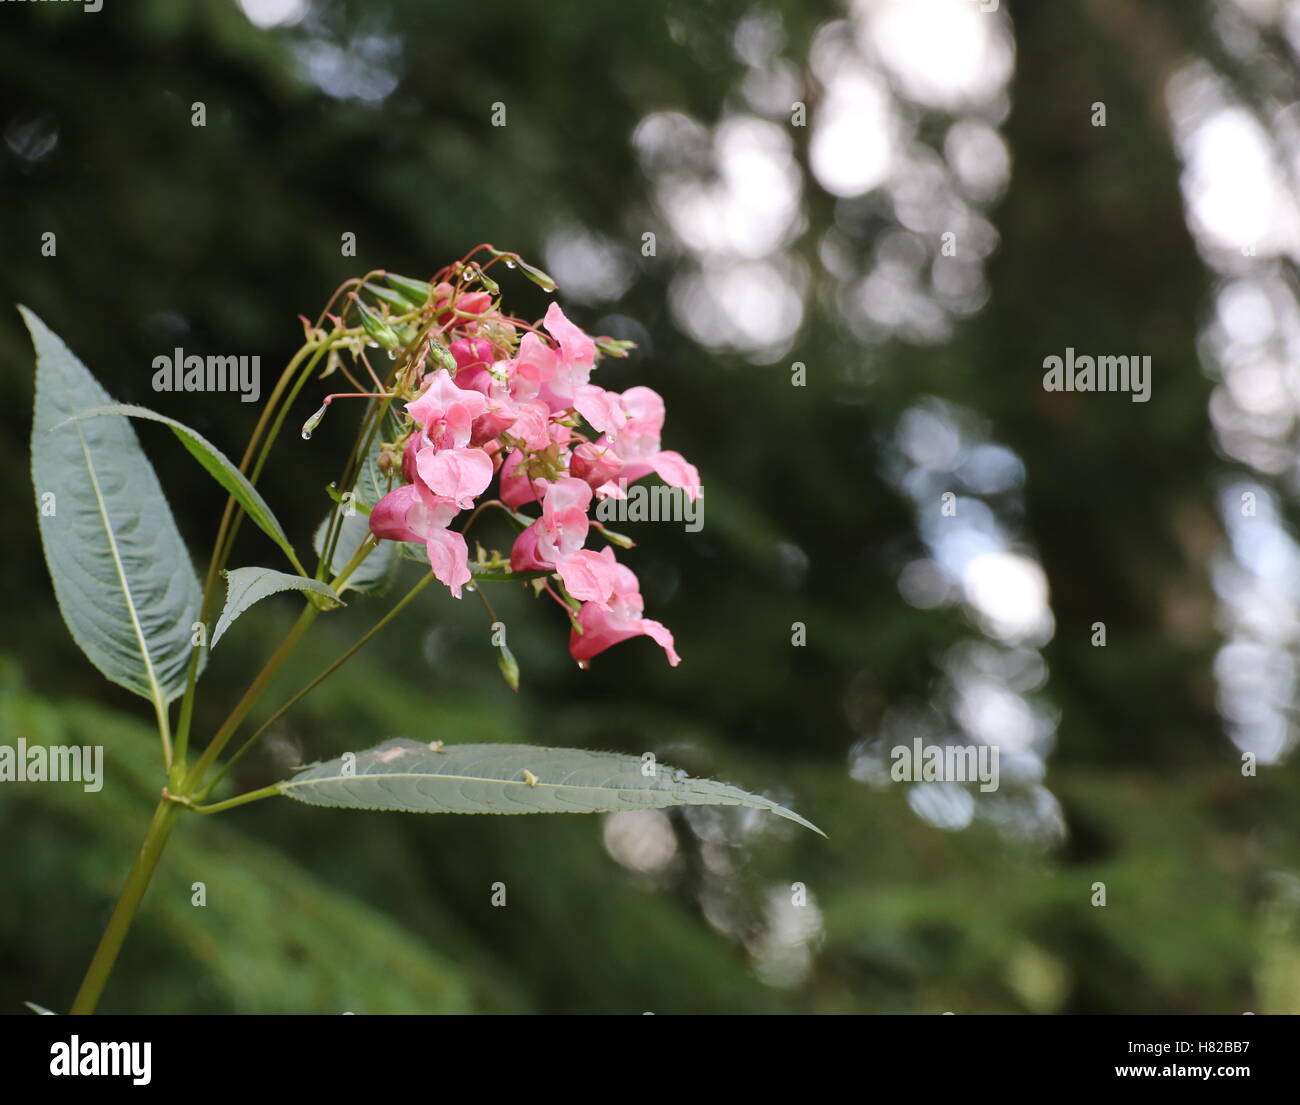 Bella Flor del Himalaya de bálsamo (Impatiens glandulifera). Foto de stock